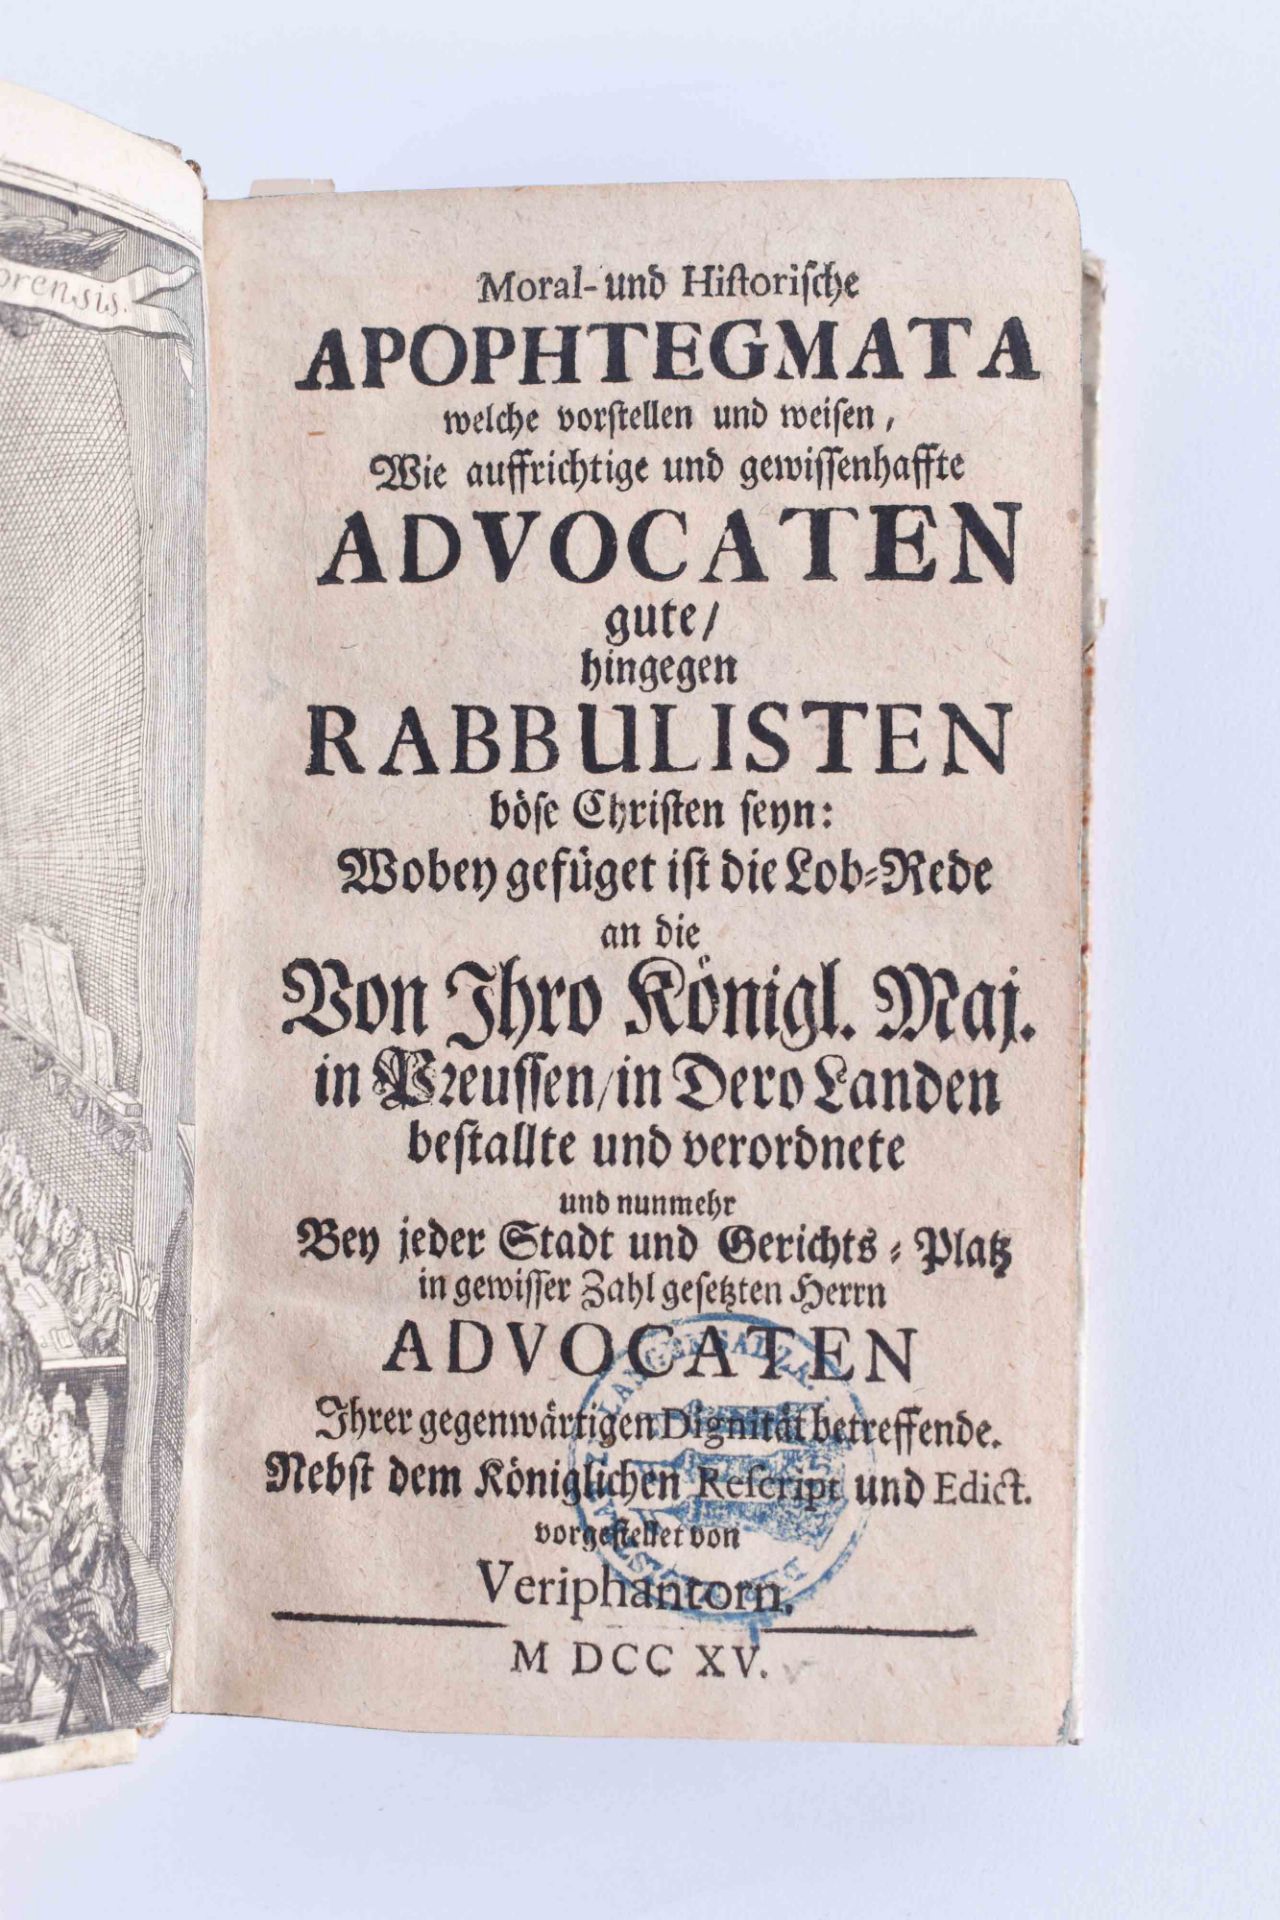 Aphotegmarta - Advocaten Der raisonirende Jurist 1714 - Bild 3 aus 5